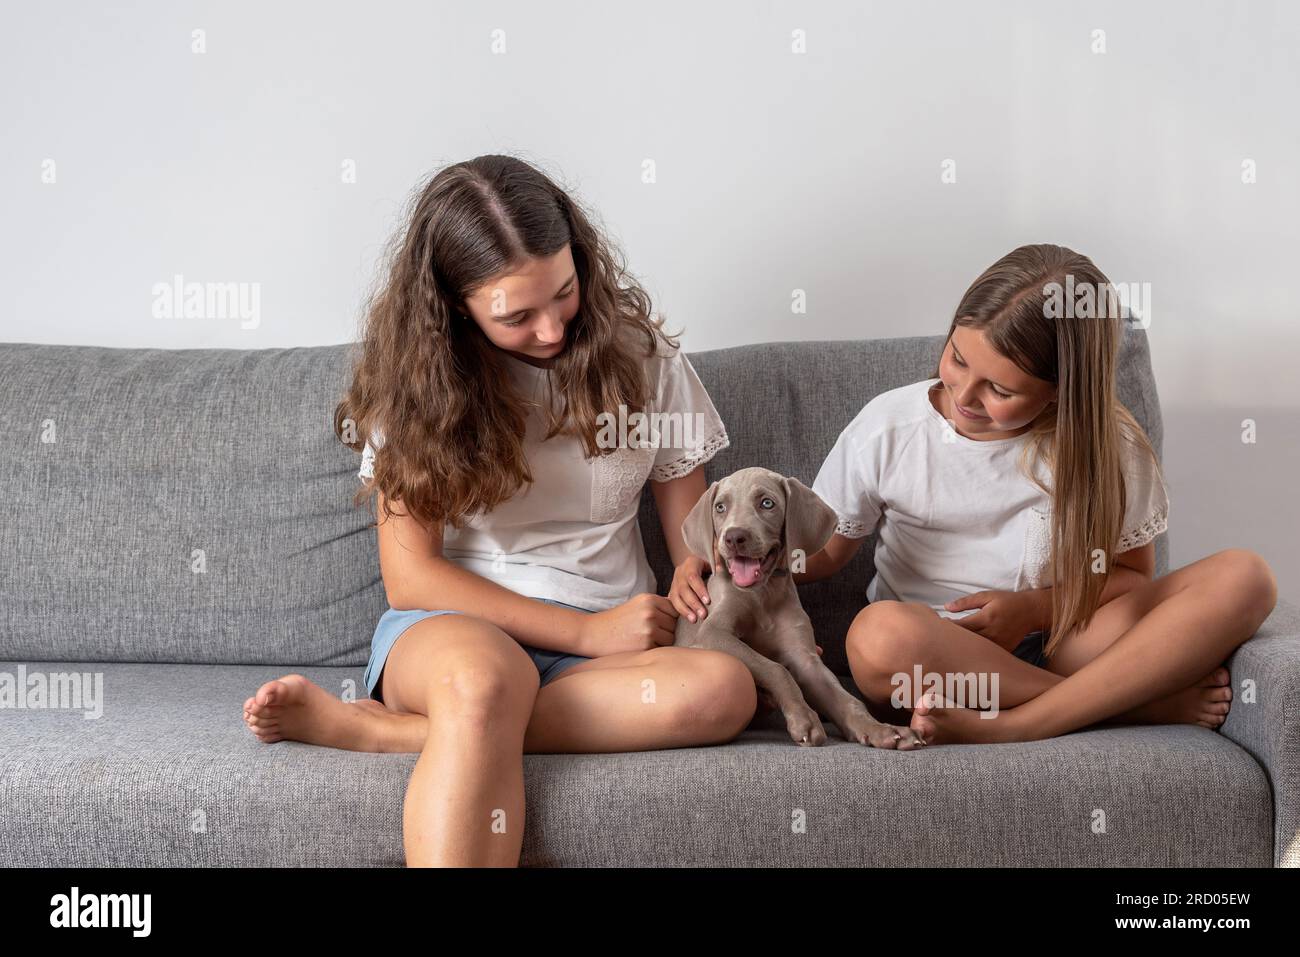 Ragazze sedute su un divano che accarezzano il loro cucciolo weimaraner. Amore per gli animali. I cani aiutano i bambini a crescere e svilupparsi. Razze di cani. Foto Stock